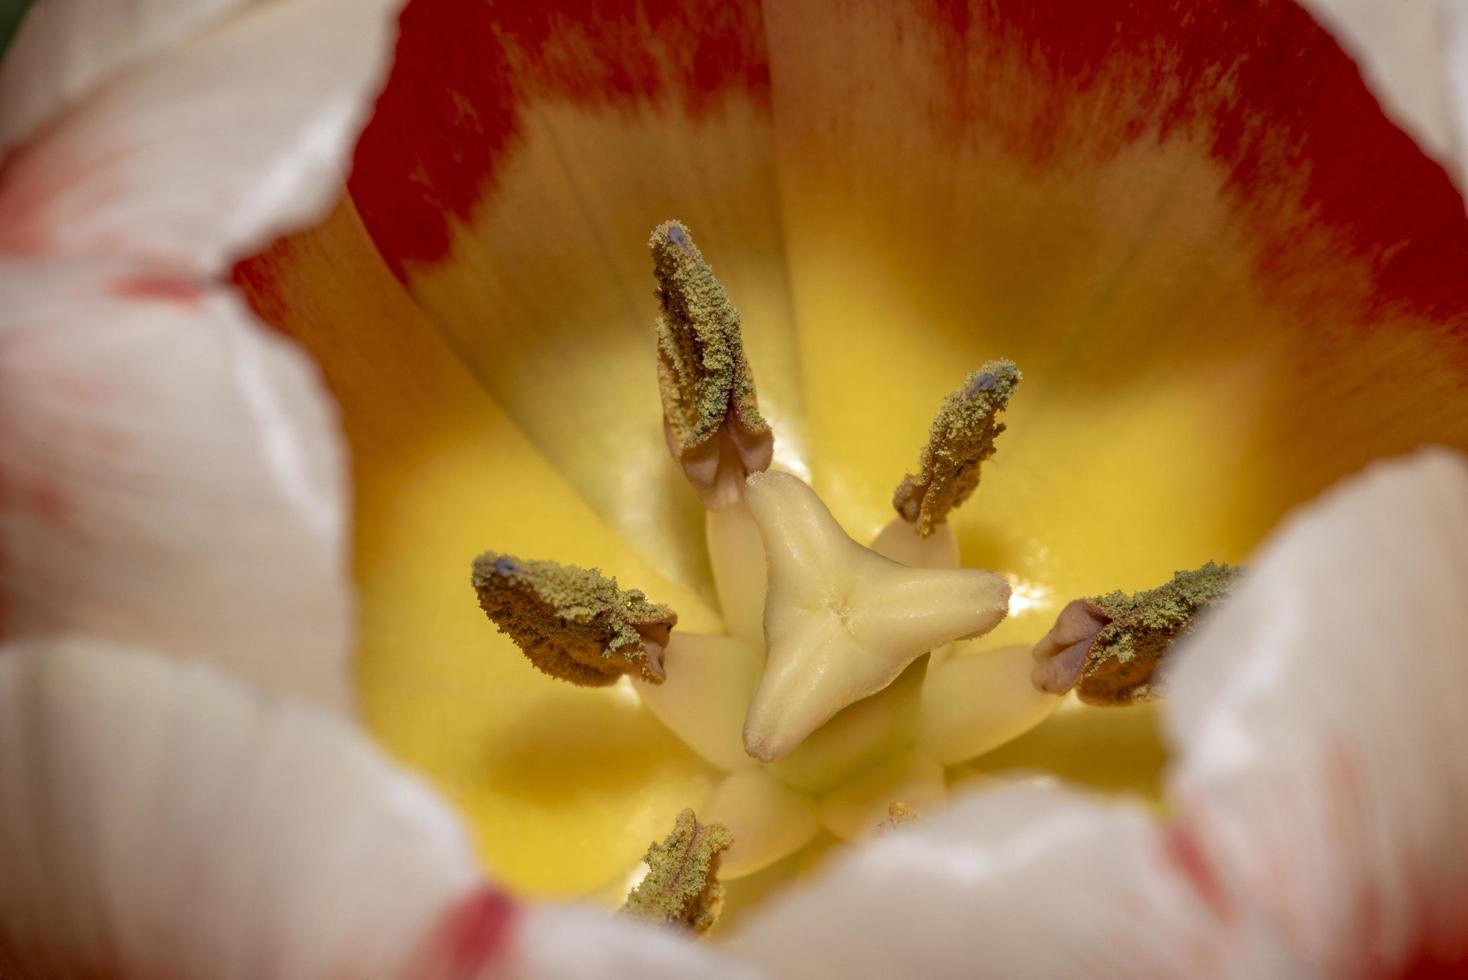 foto macro dello stame e pistillo di un fiore di tulipano